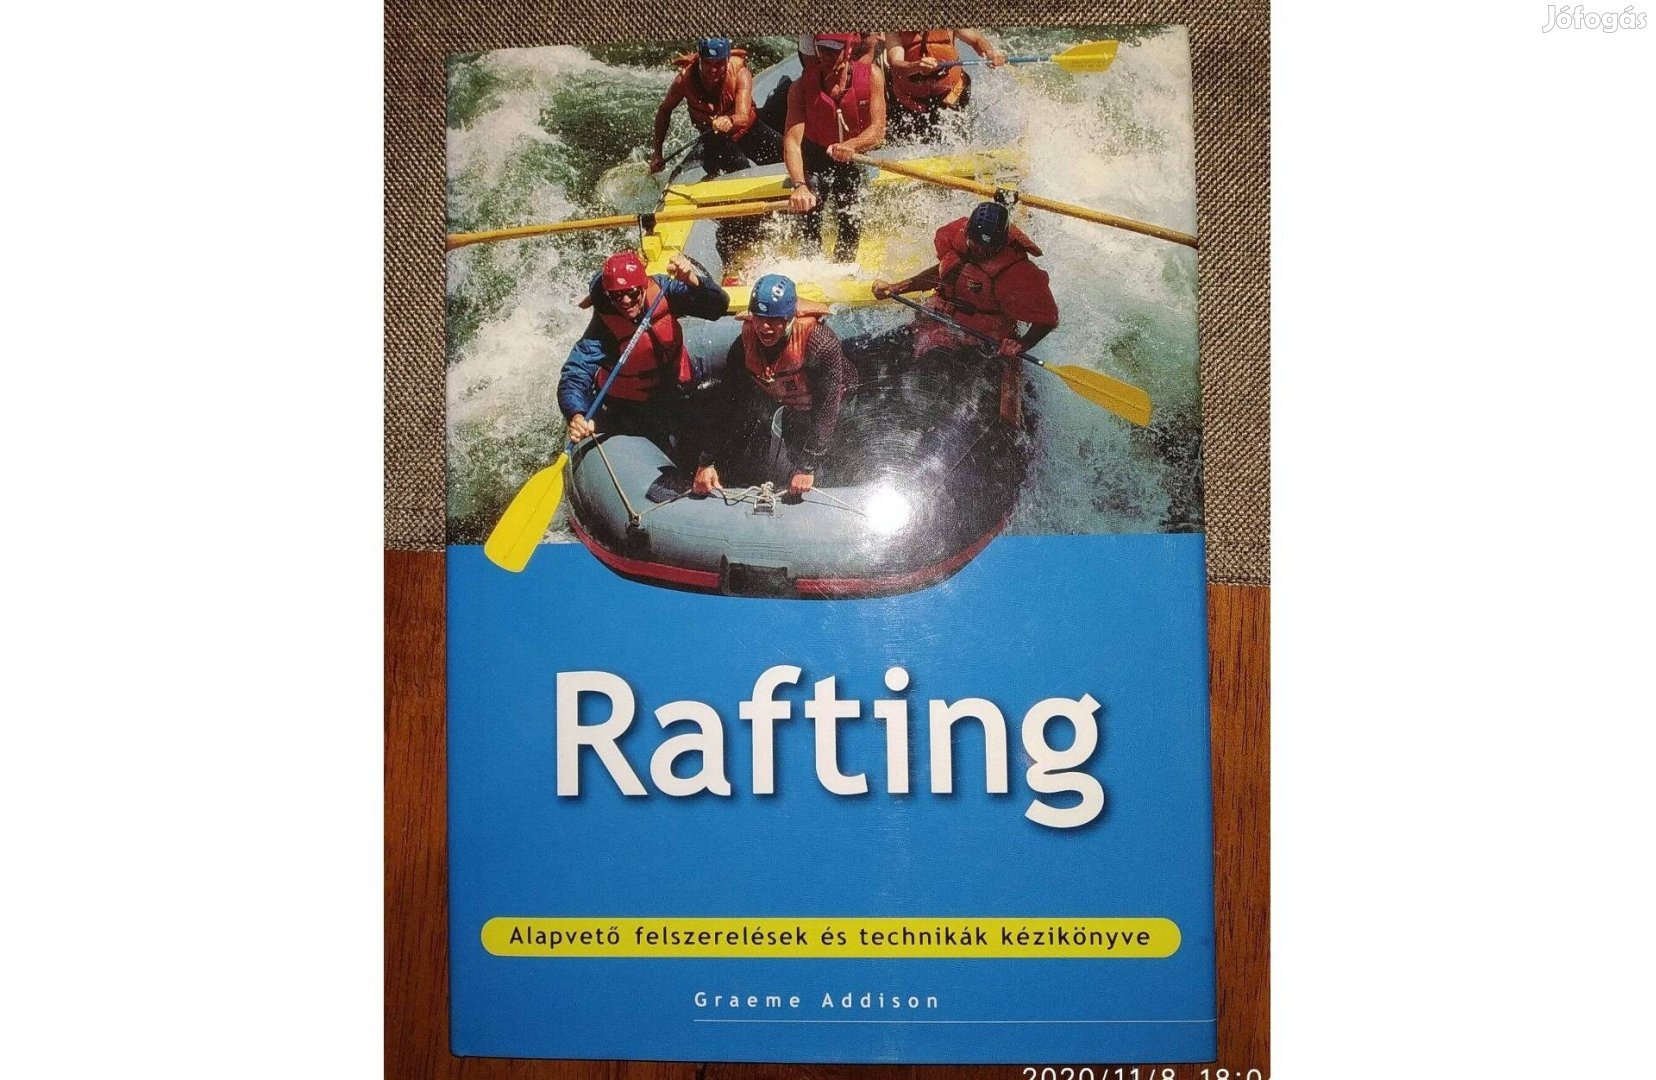 Rafting képes album és kézikönyv Egyre több ember próbálja ki a vadvíz